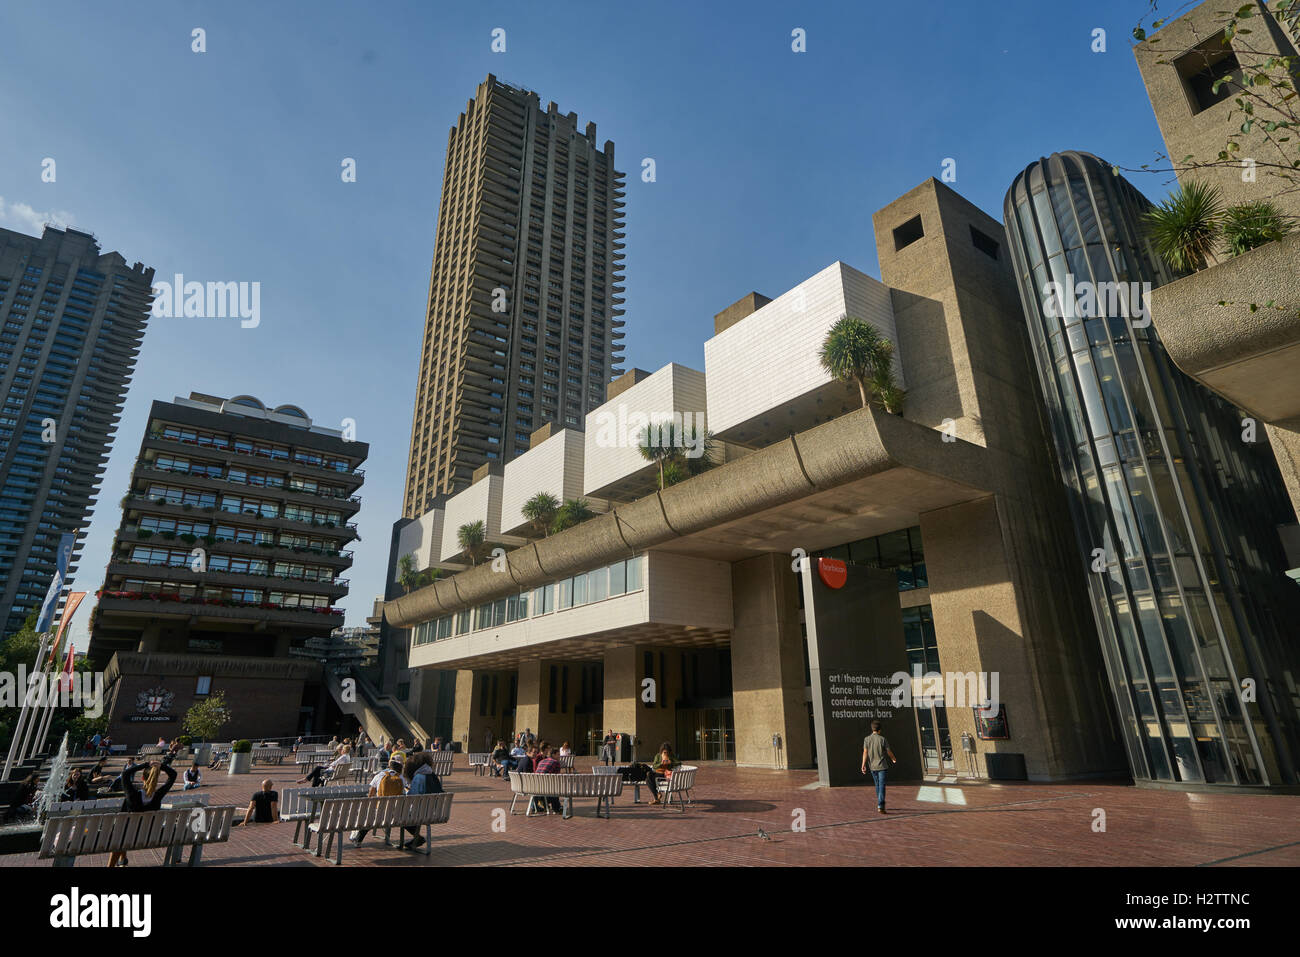 Il Barbican Centre di Londra. Architettura moderna. Brutalist. Edifici in cemento. Foto Stock